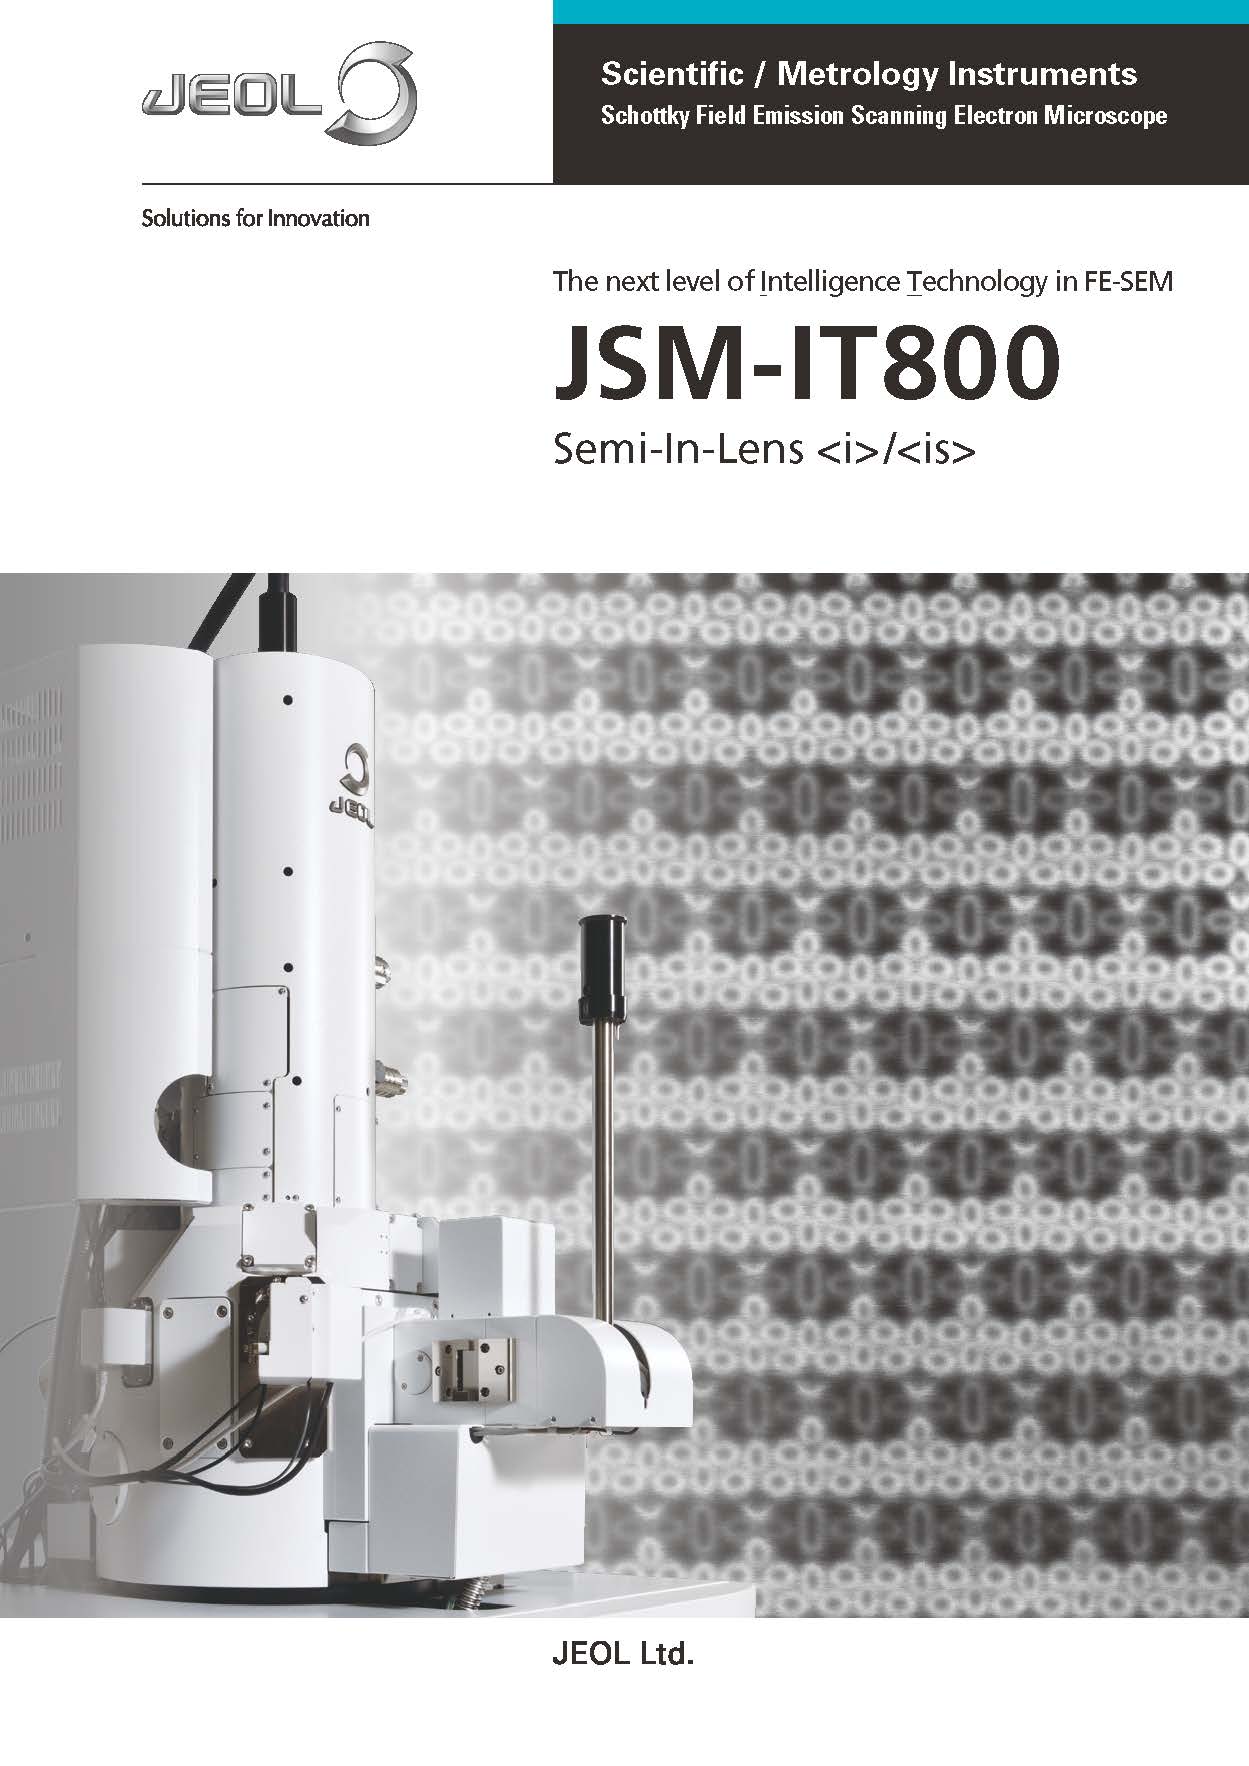 JSM-IT800(i)/(is) Автоэмиссионный сканирующий электронный микроскоп Шоттки